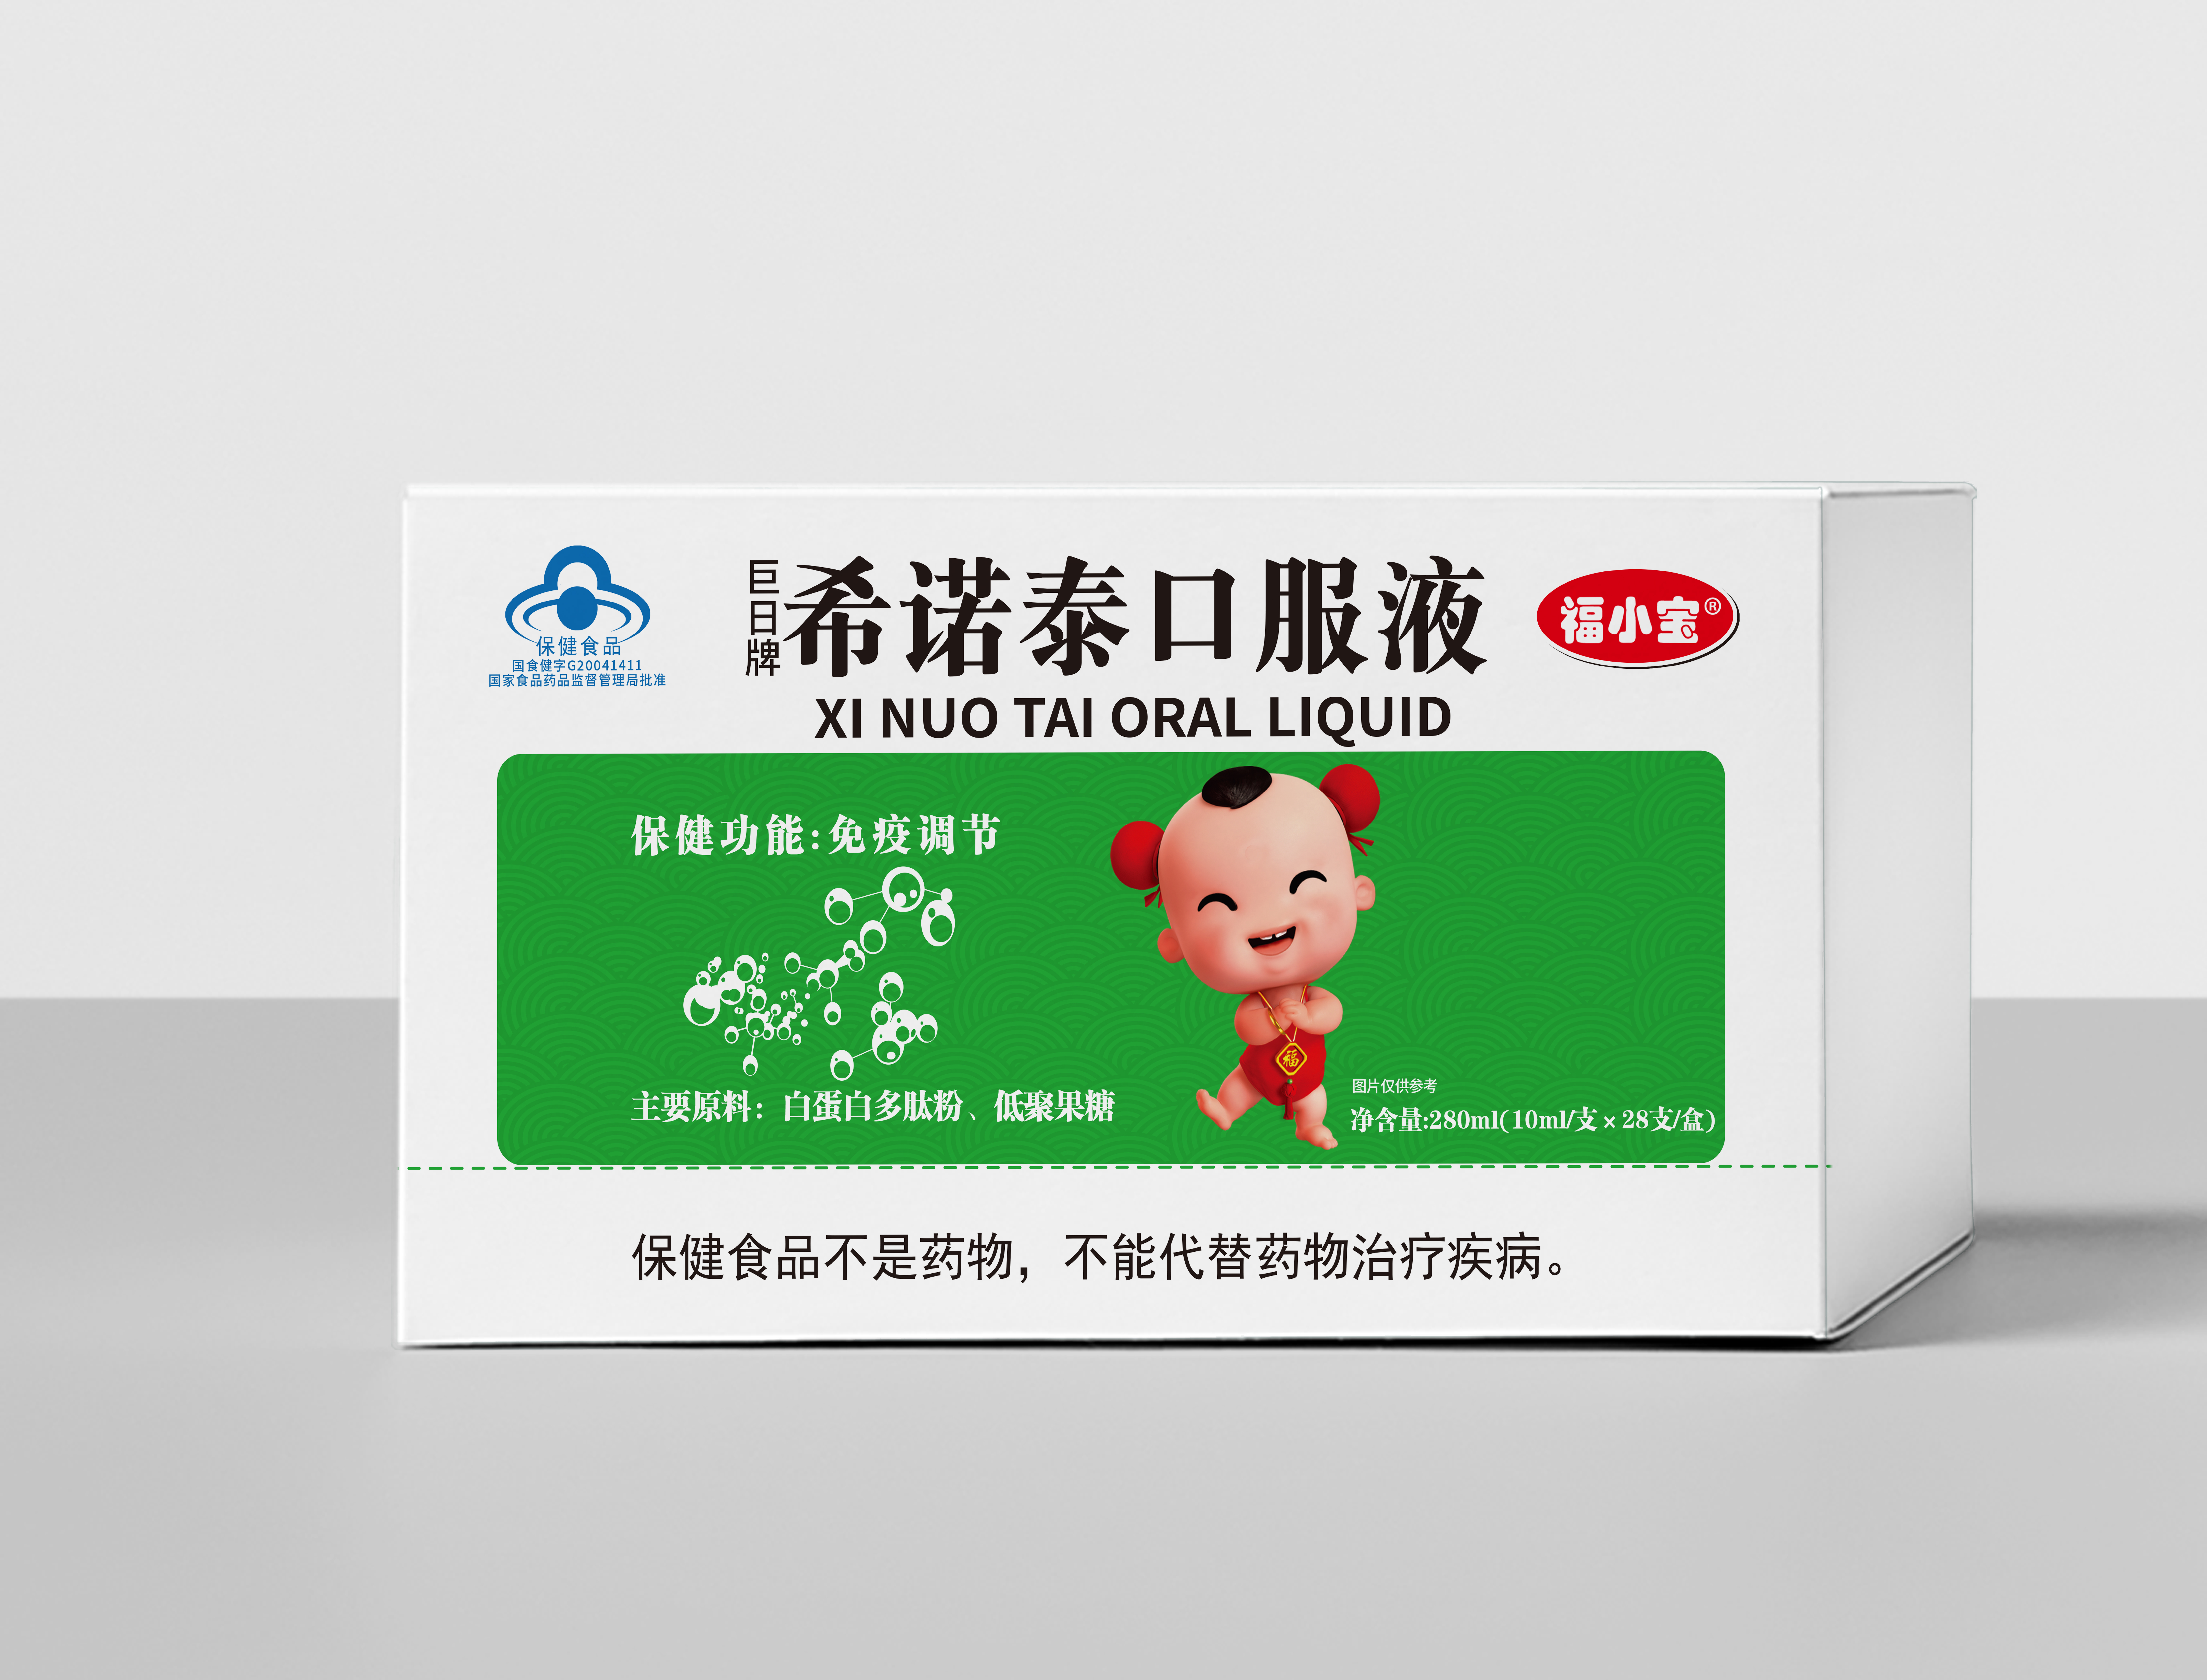 Guangxi Qijian Health Products Co., Ltd